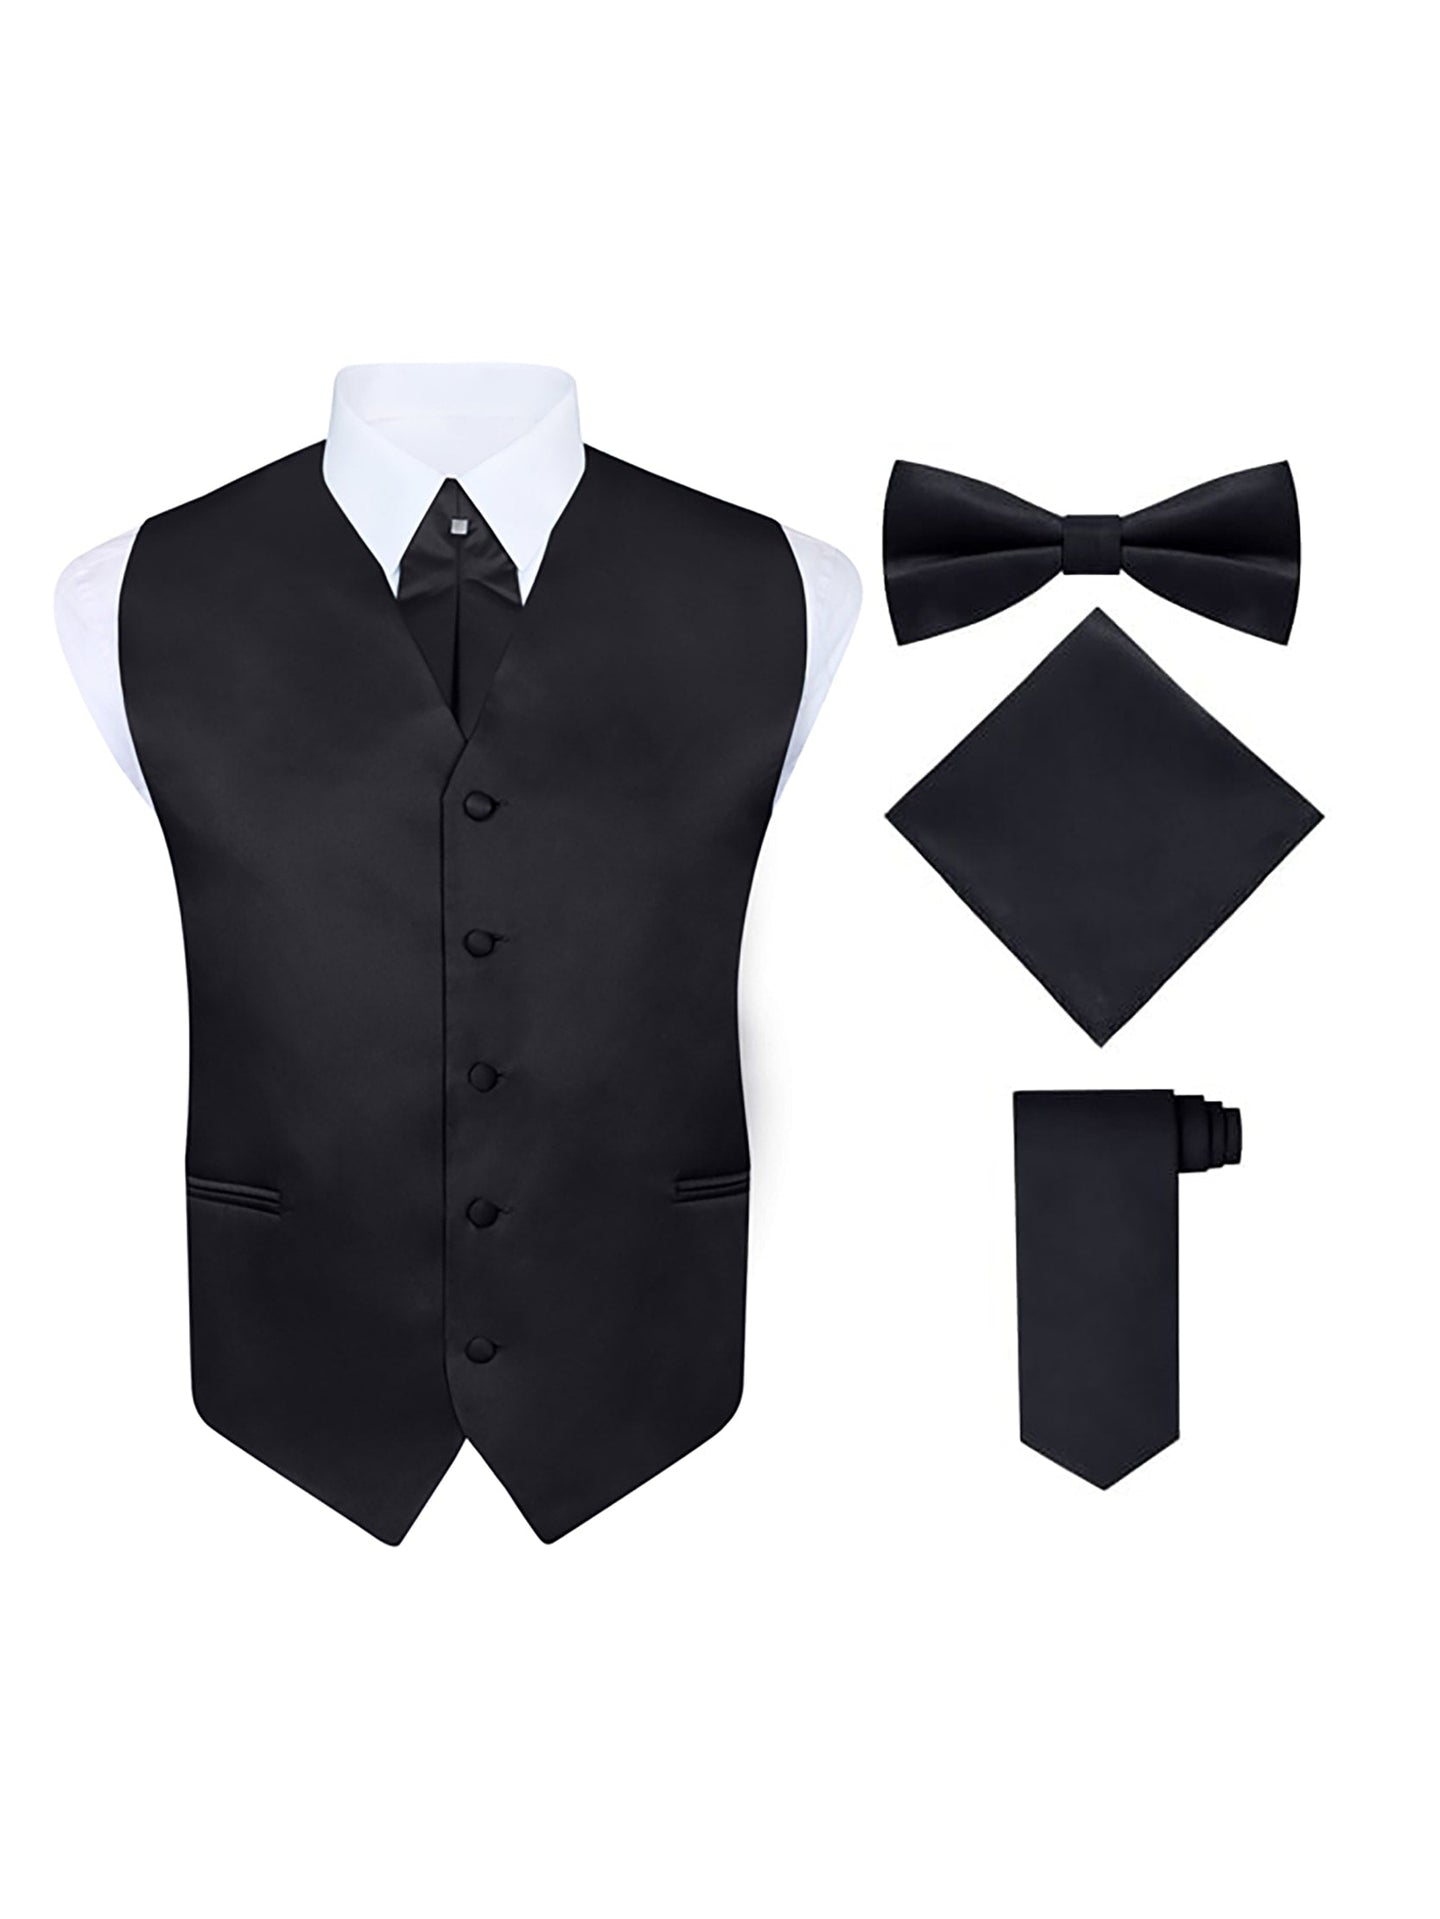 S.H. Churchill & Co. Men's 5 Piece Vest Set, with Cravat, Bow Tie, Neck Tie & Pocket Hanky-Black